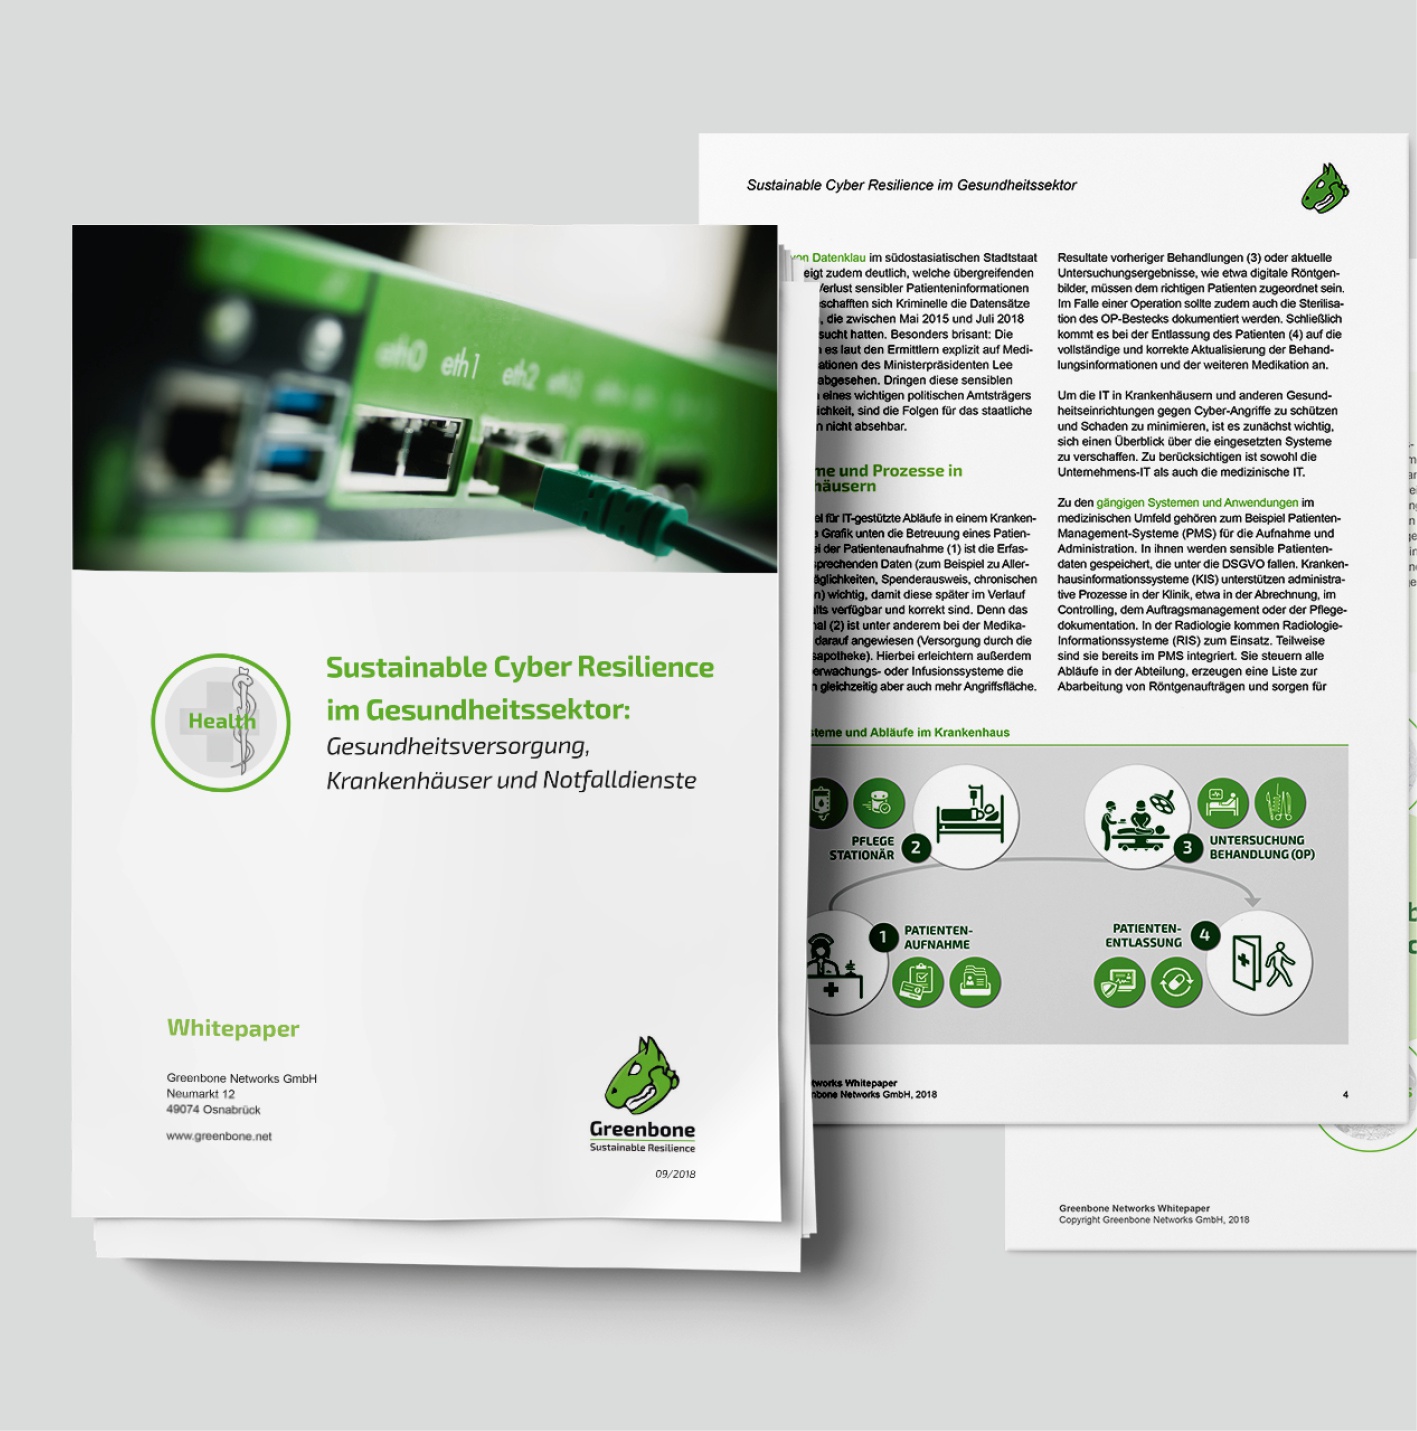 Greenbone Networks GmbH: Auftrag über Akima Media, Whitepaper--Entwicklung: 6 Themenbereiche – deutsch und englisch, Infografiken